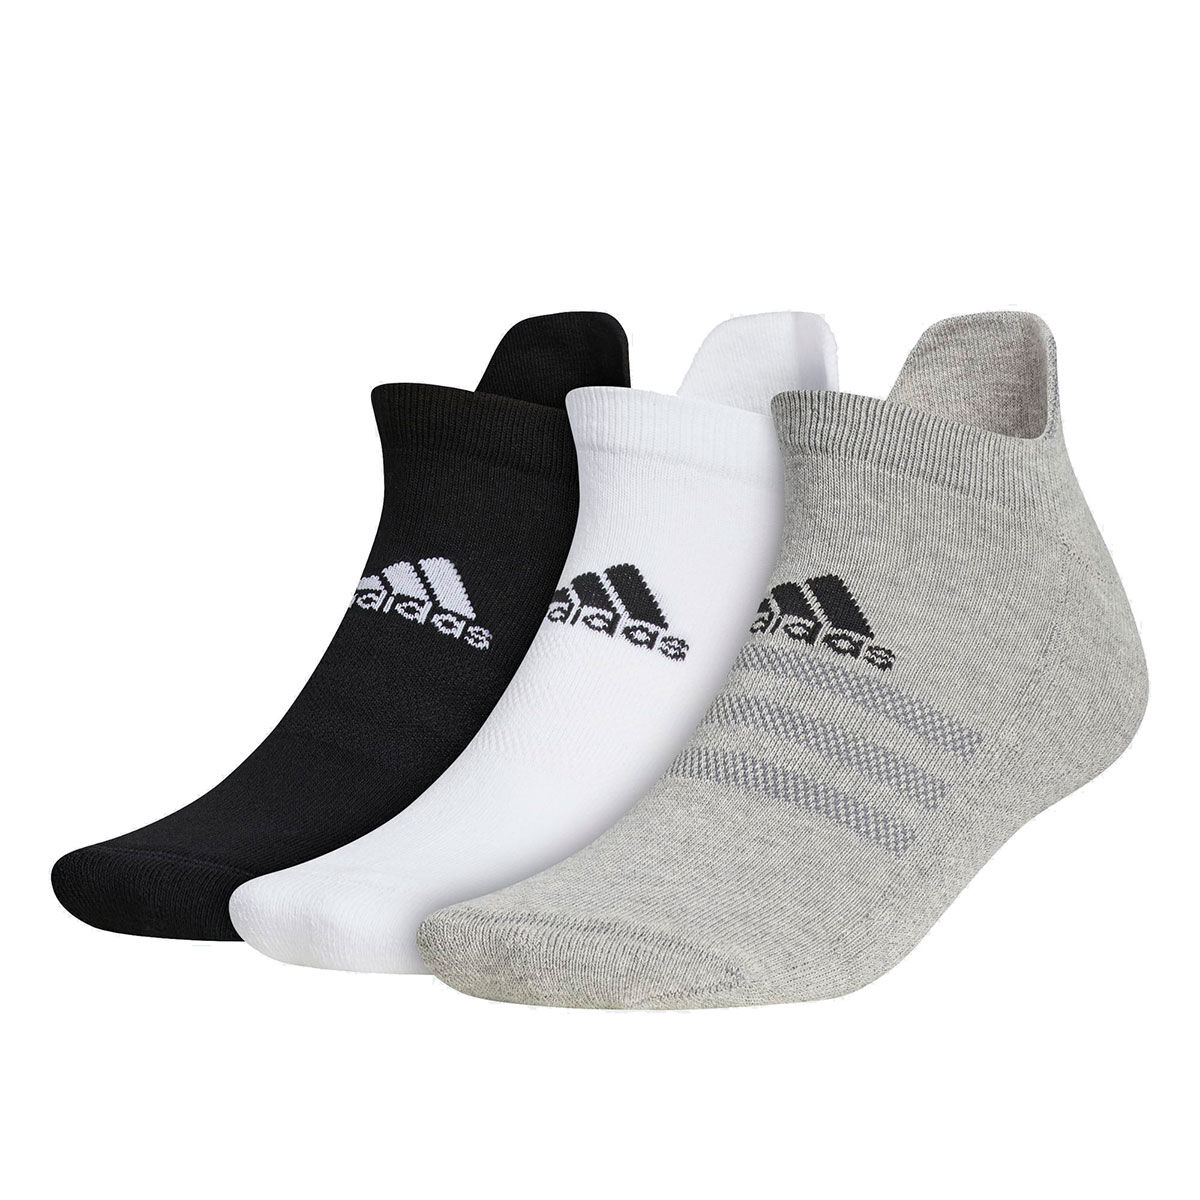 Chaussettes adidas Golf Ankle 3 paires, homme, 6.5-8, Blanc/Noir/Gris | Online Golf